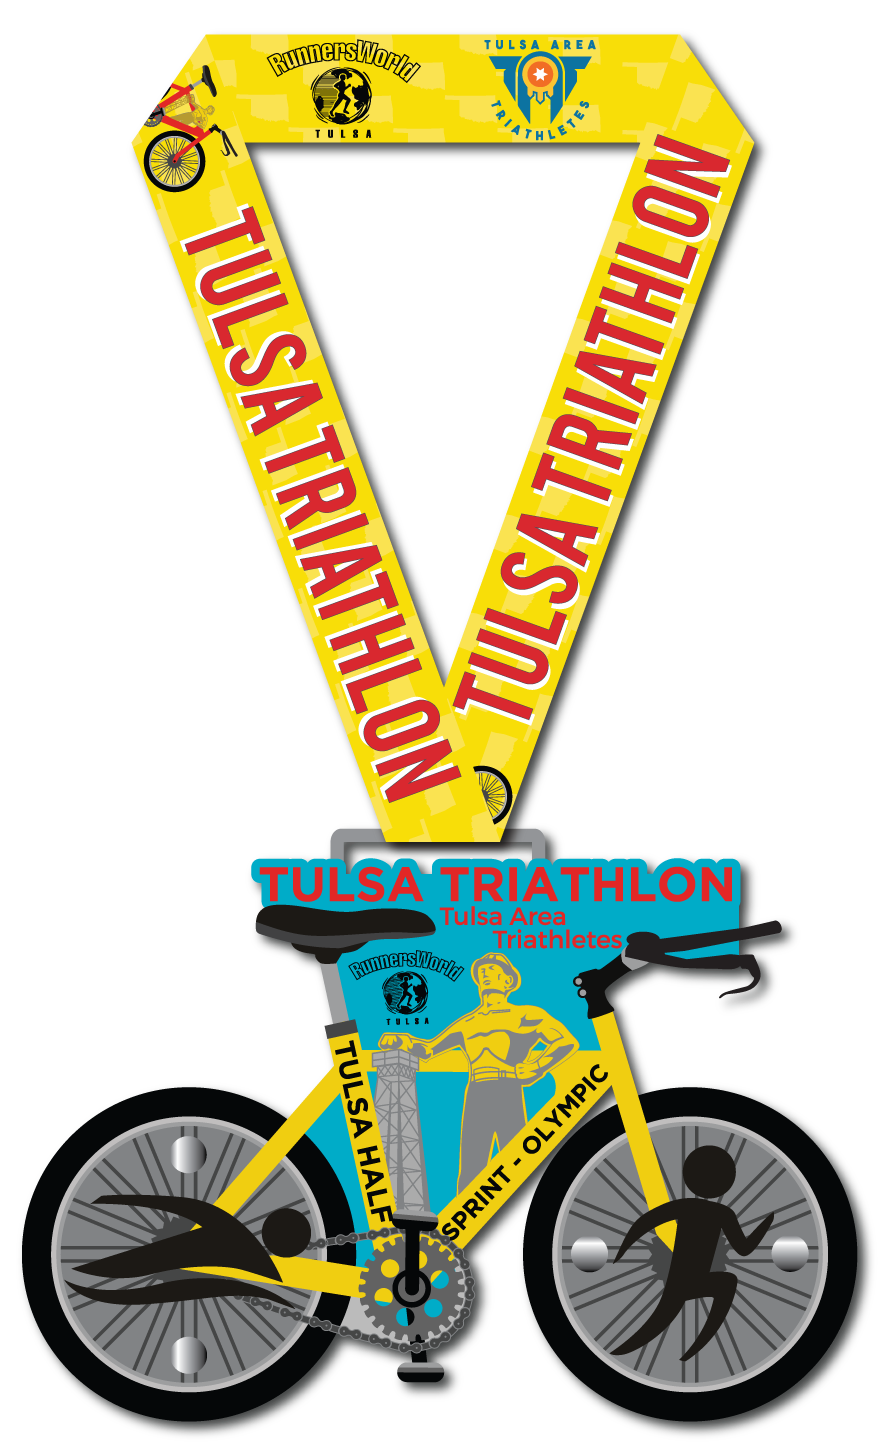 Finisher's Medal for the 2022 Tulsa Triathlon